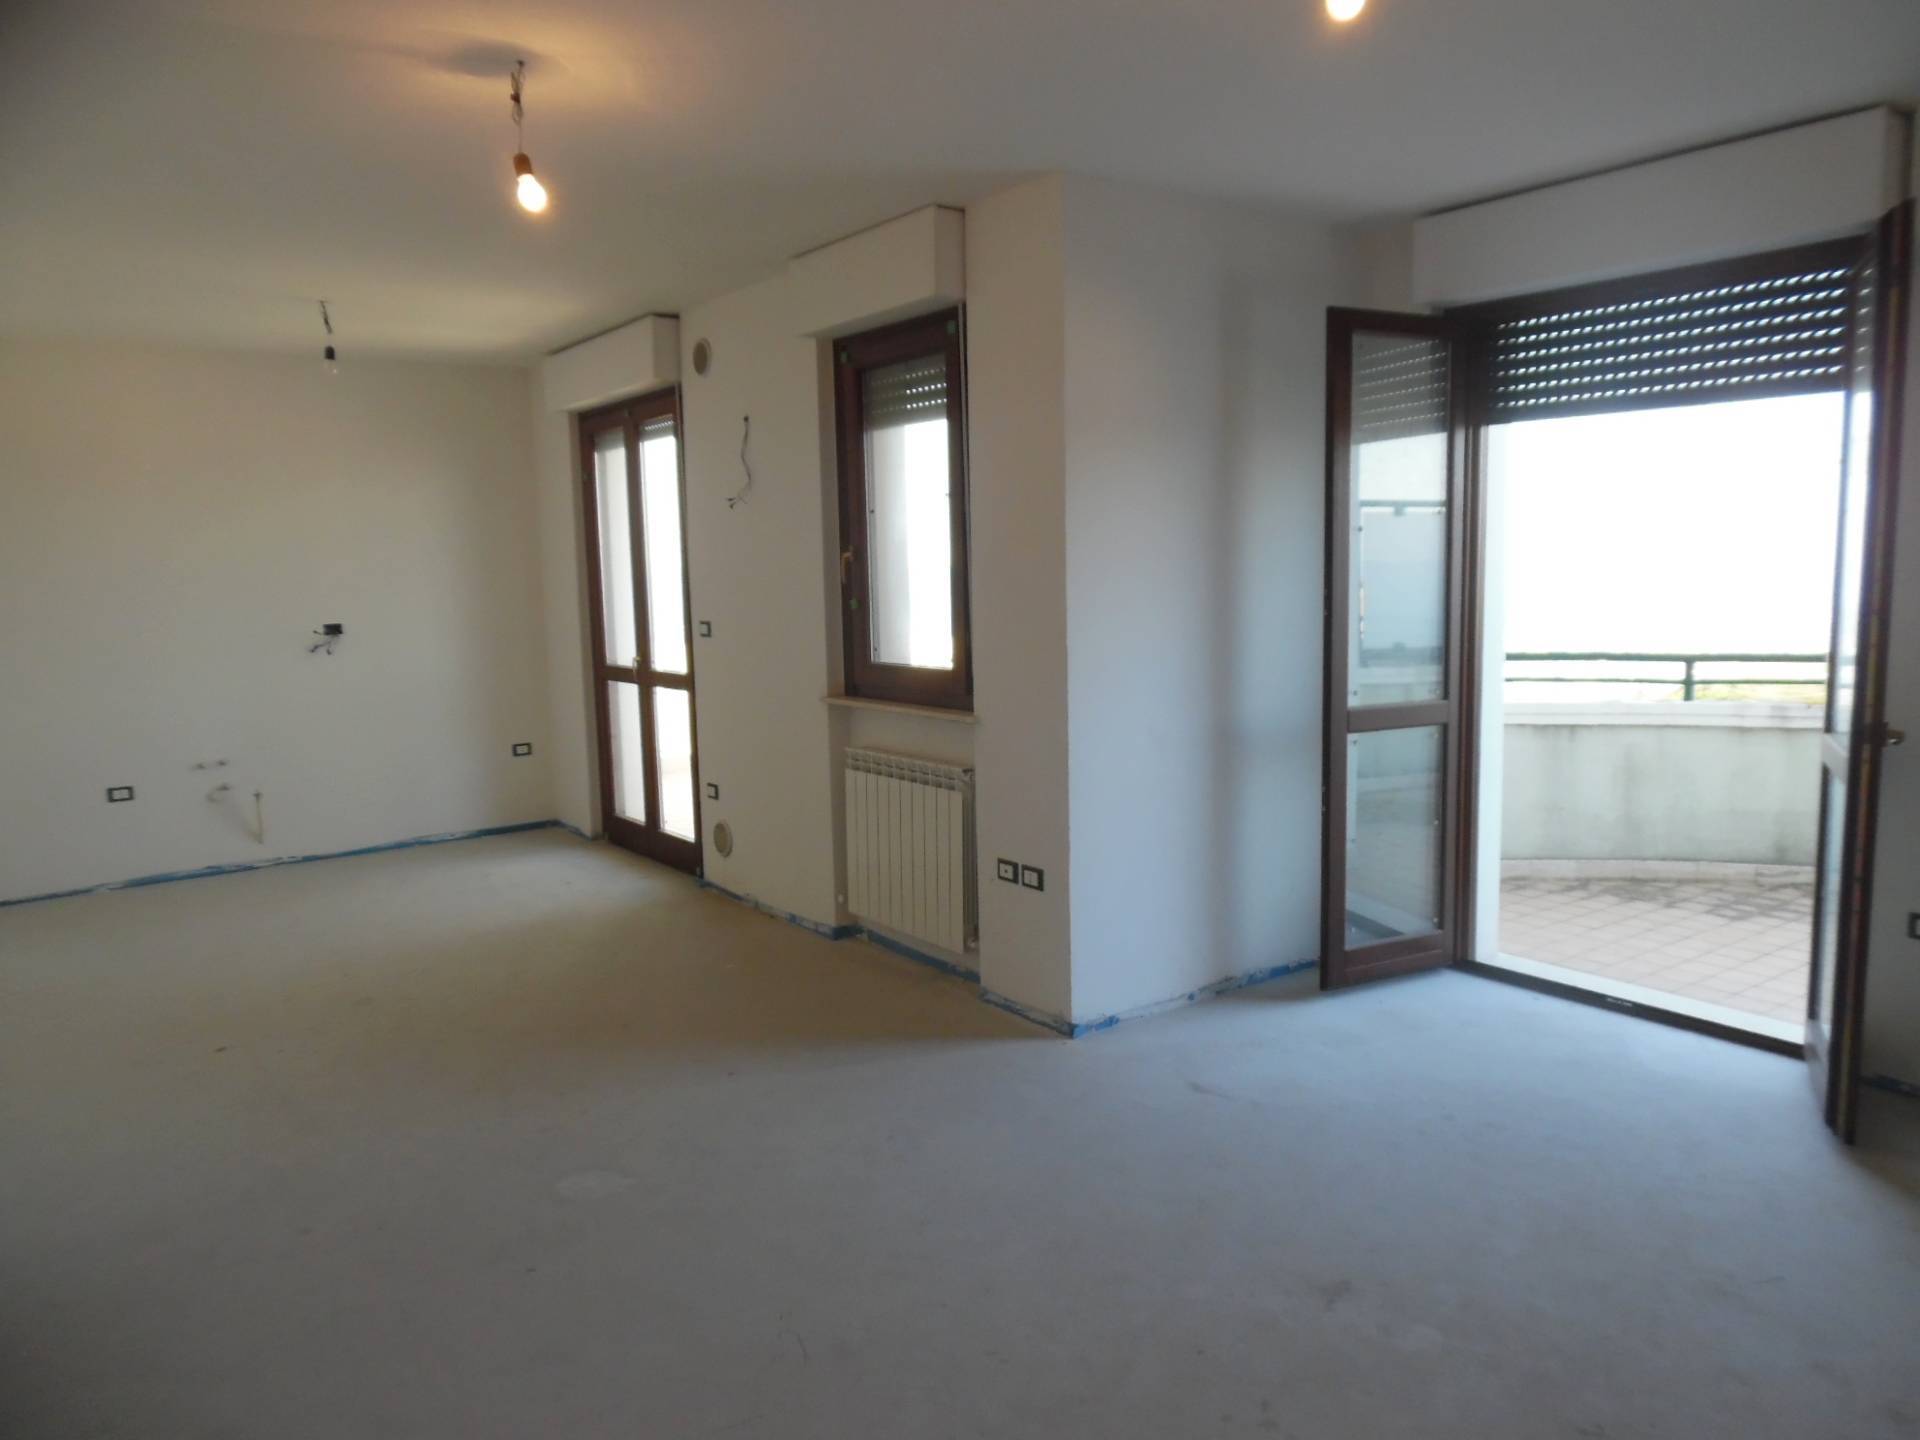 Appartamento in vendita a Colonnella, 3 locali, prezzo € 150.000 | PortaleAgenzieImmobiliari.it